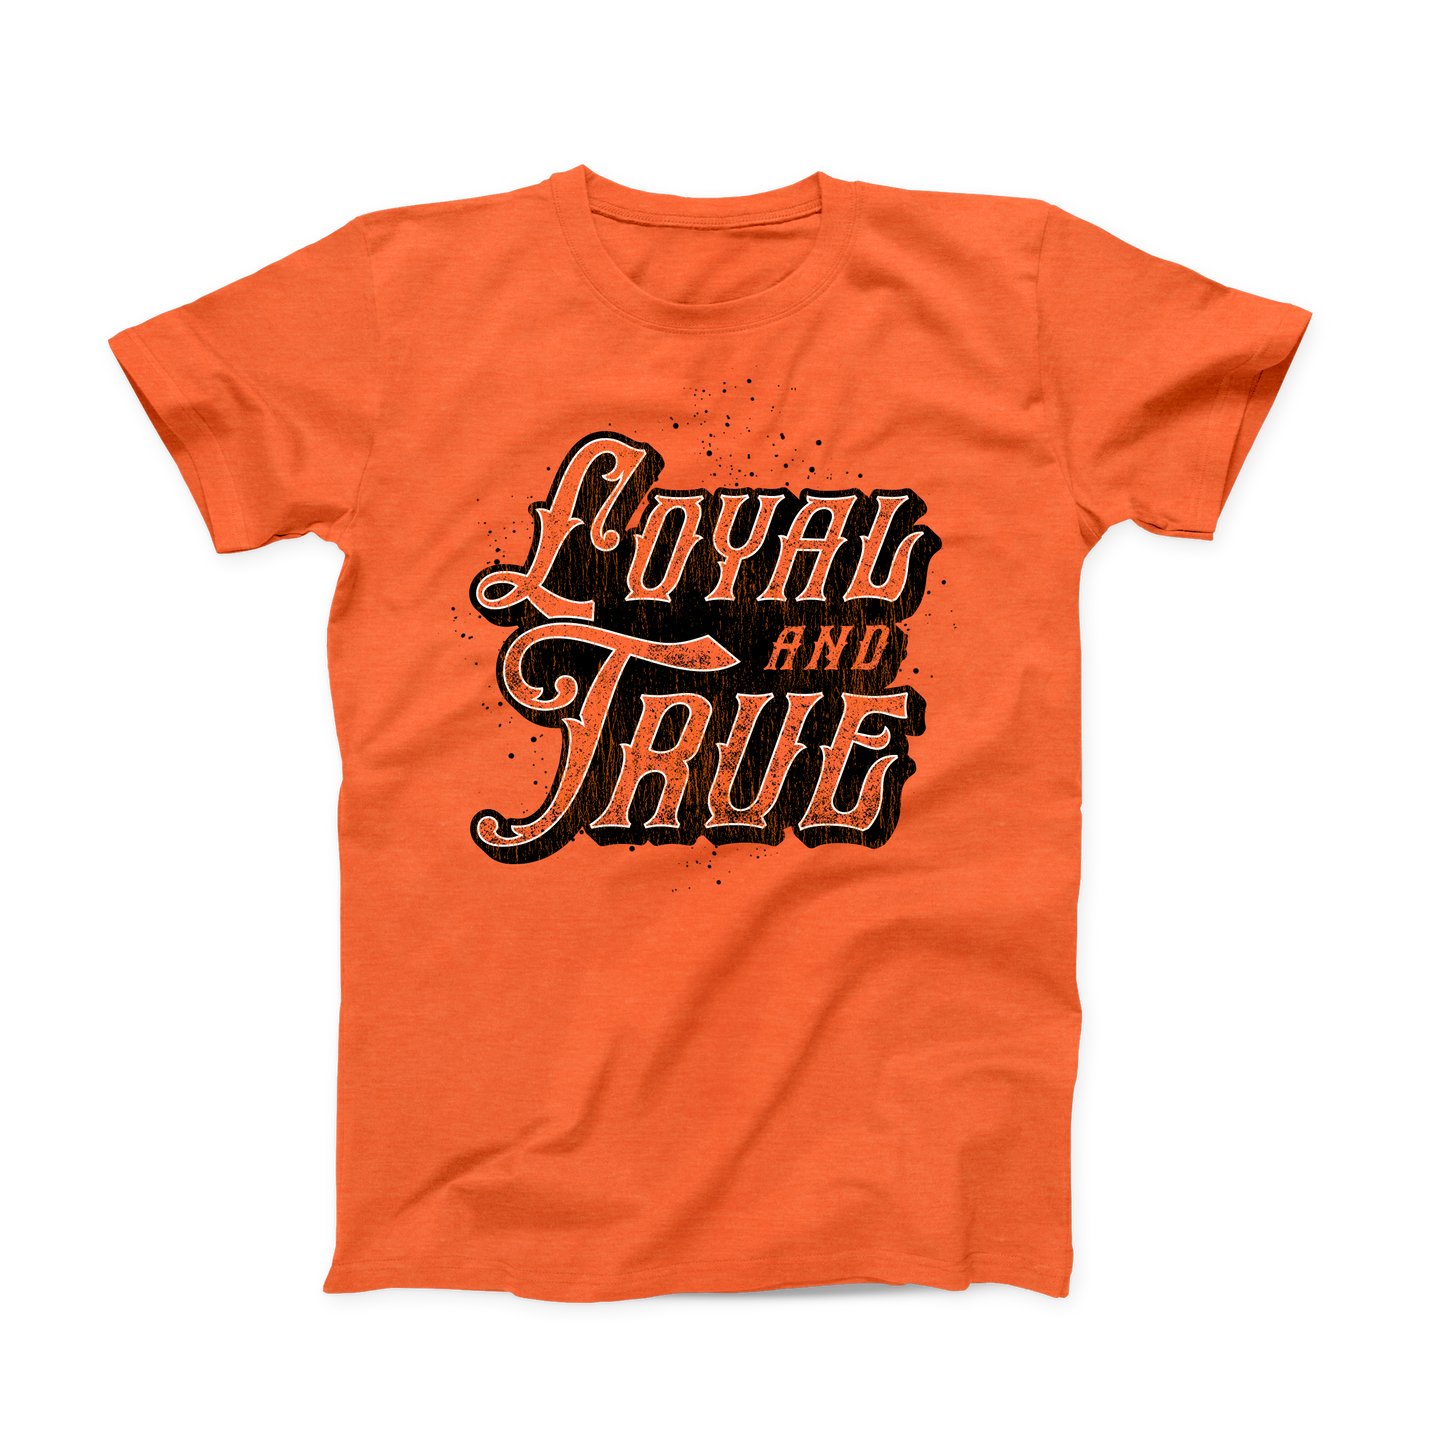 Orange OSU "Loyal and True" T-shirt